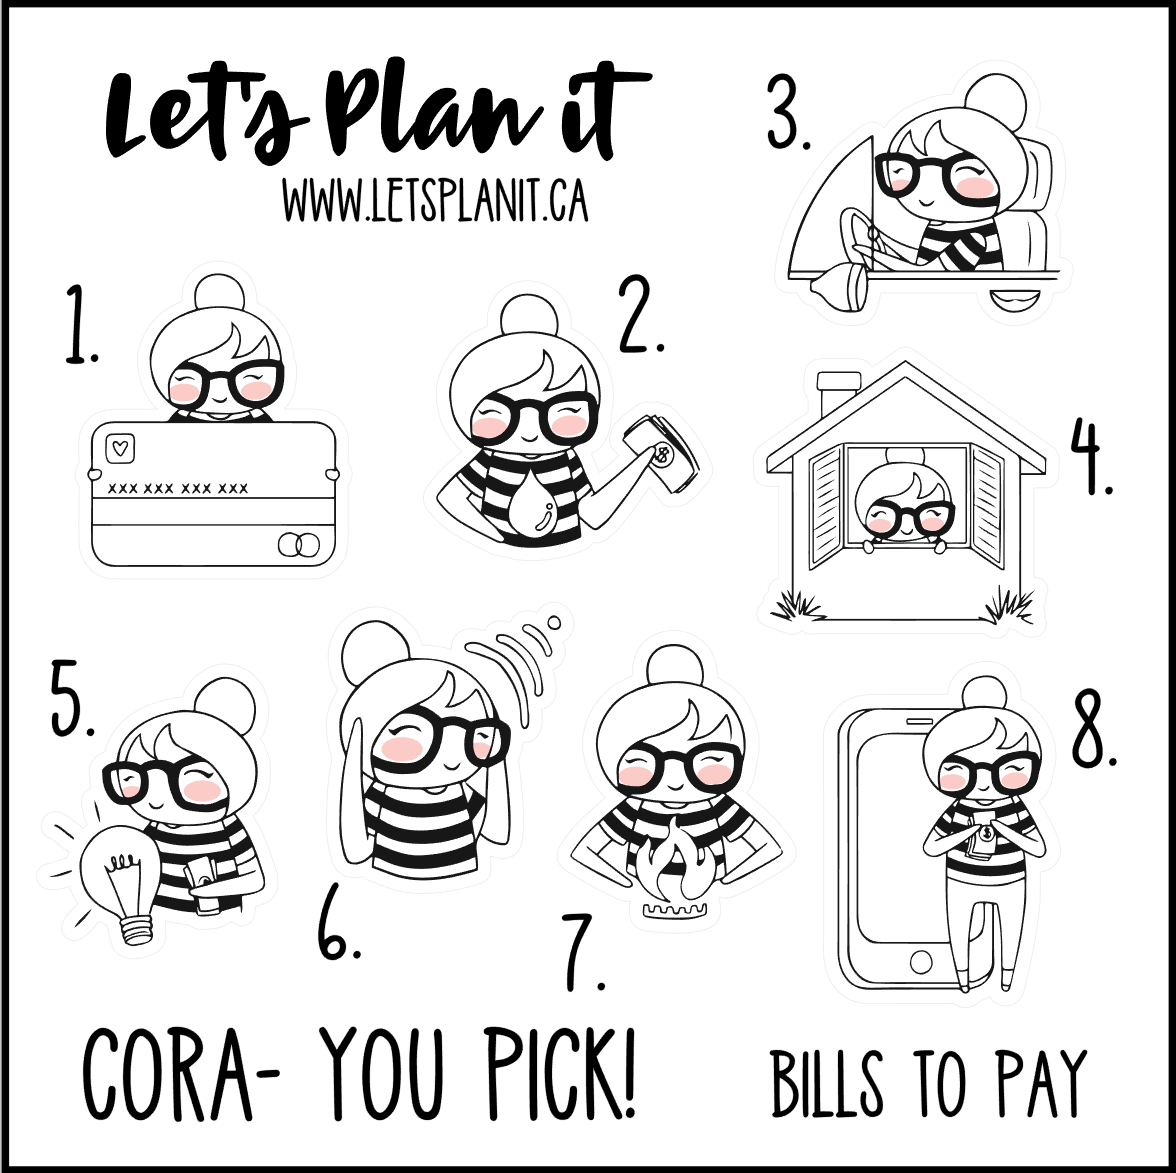 Cora-u-pick- Bills